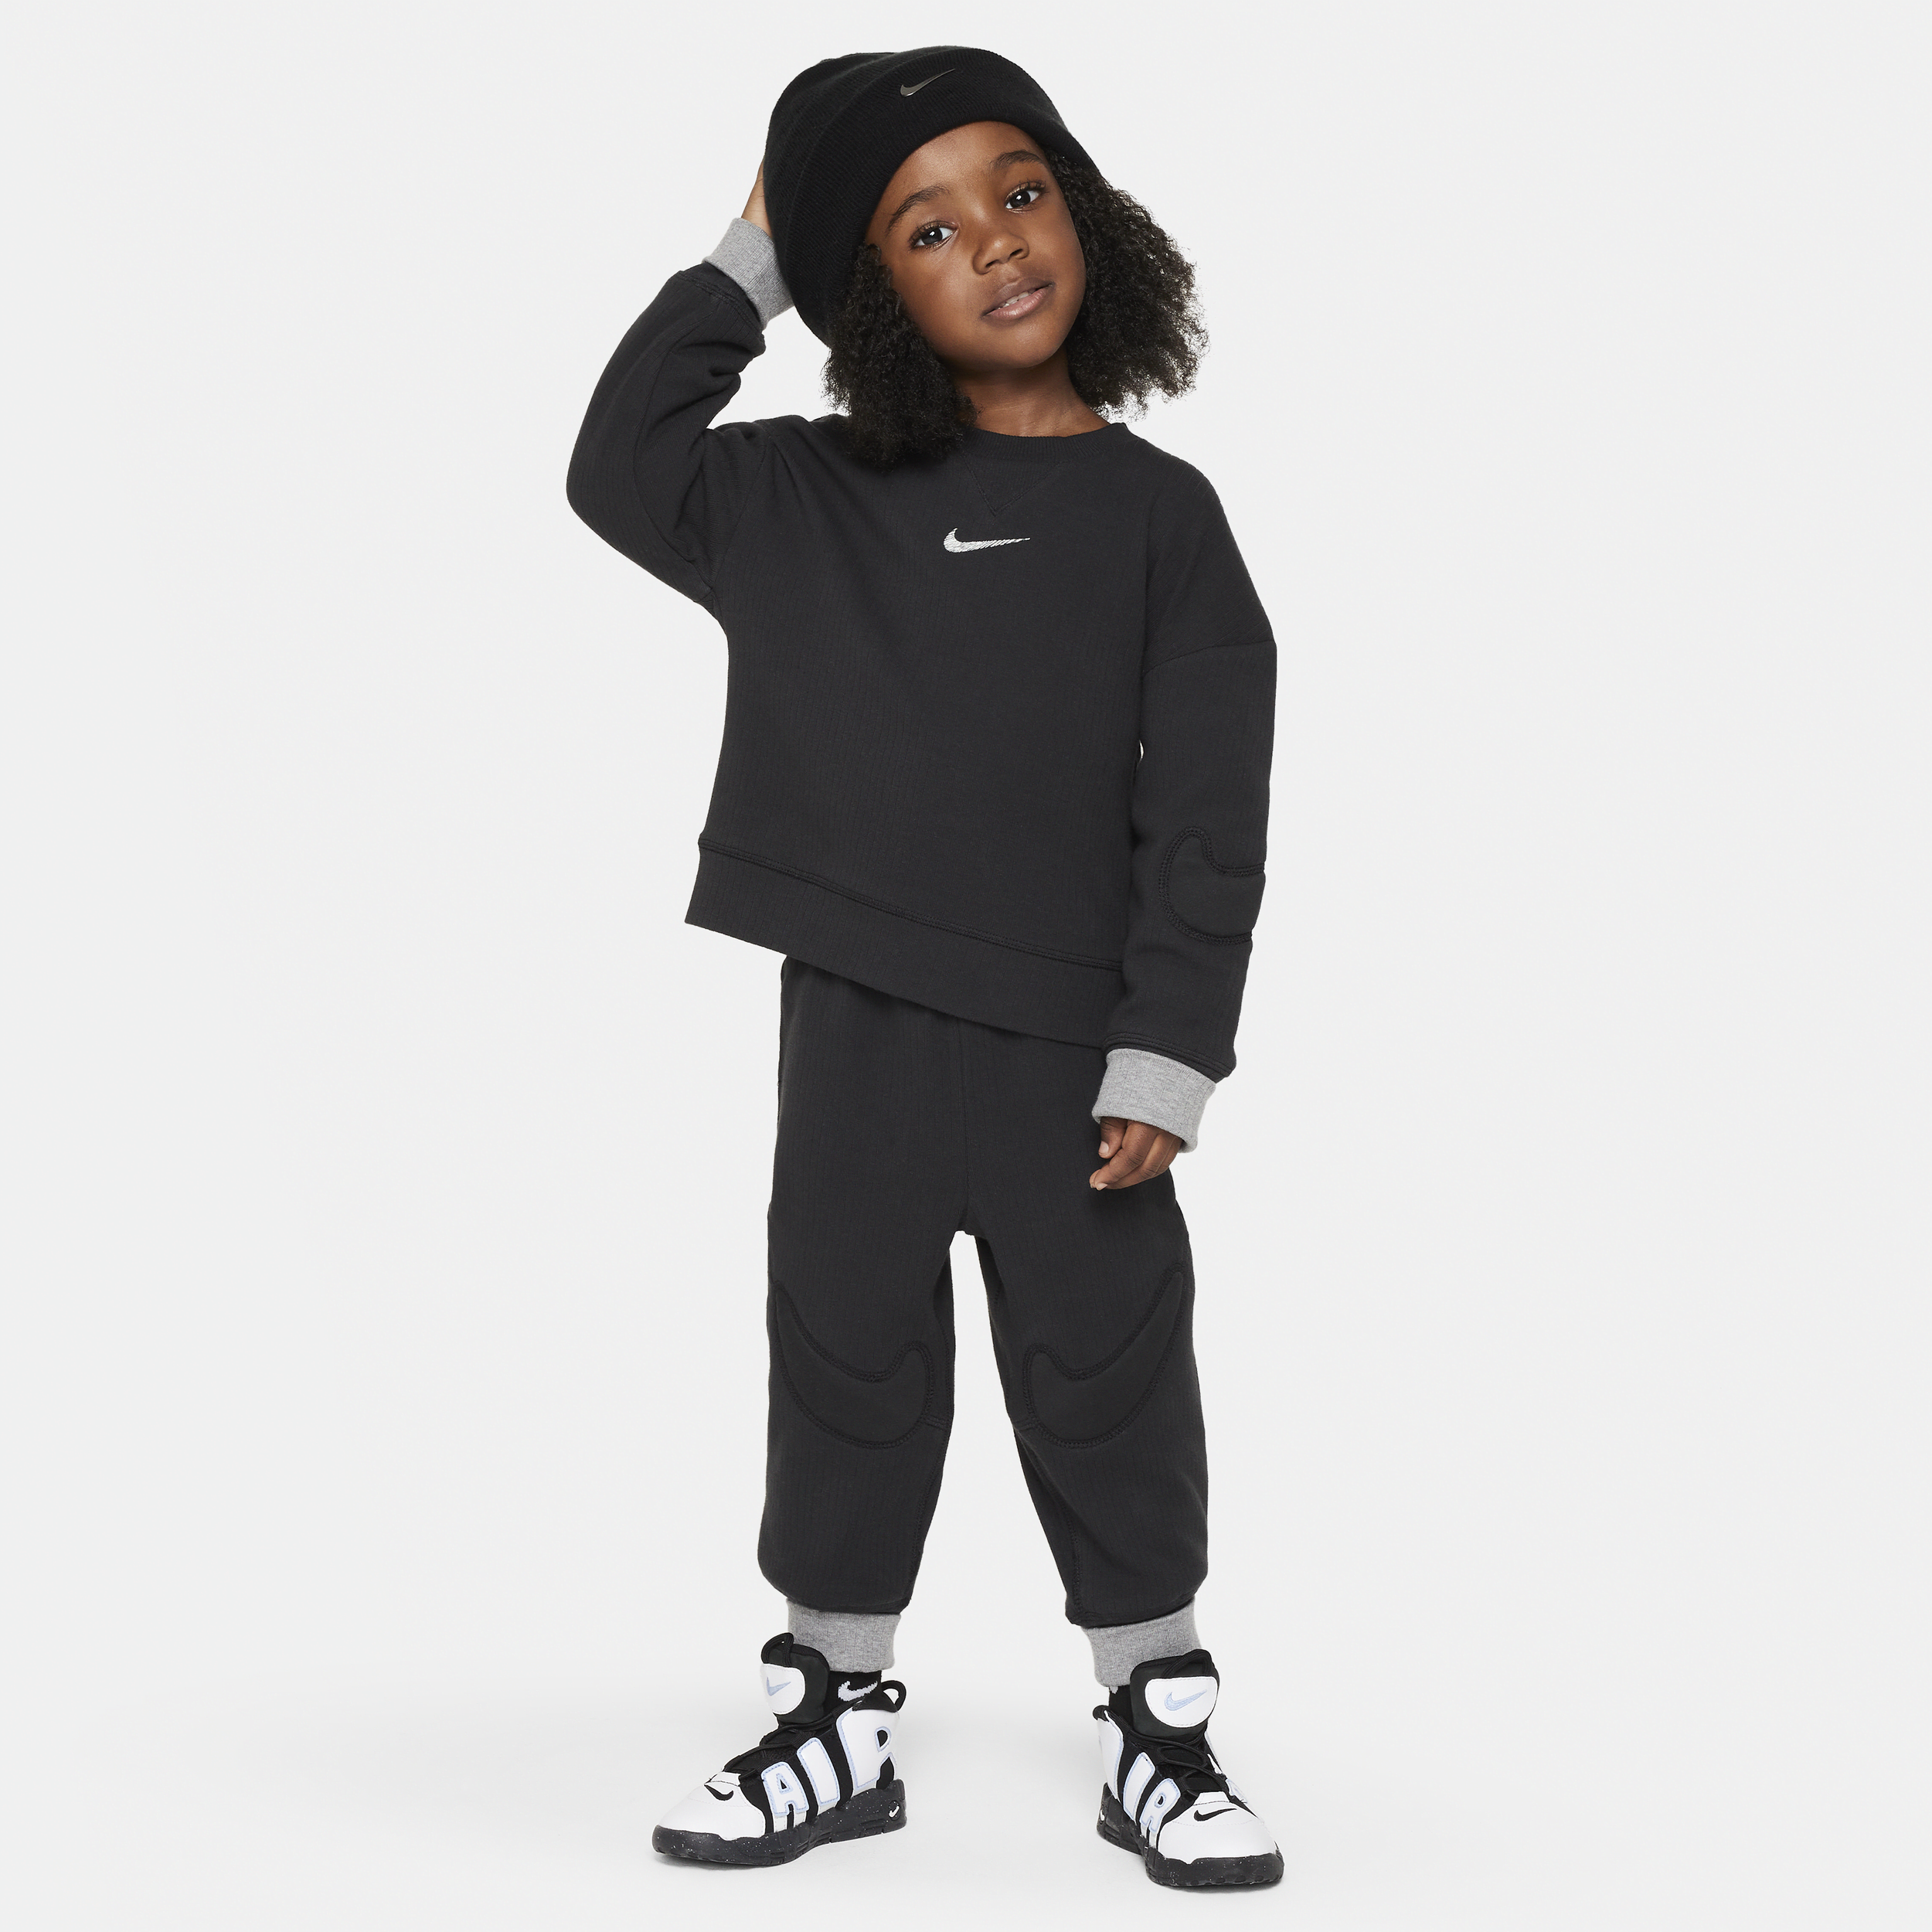 Nike Babies' Readyset Toddler 2-piece Crew Set In Black